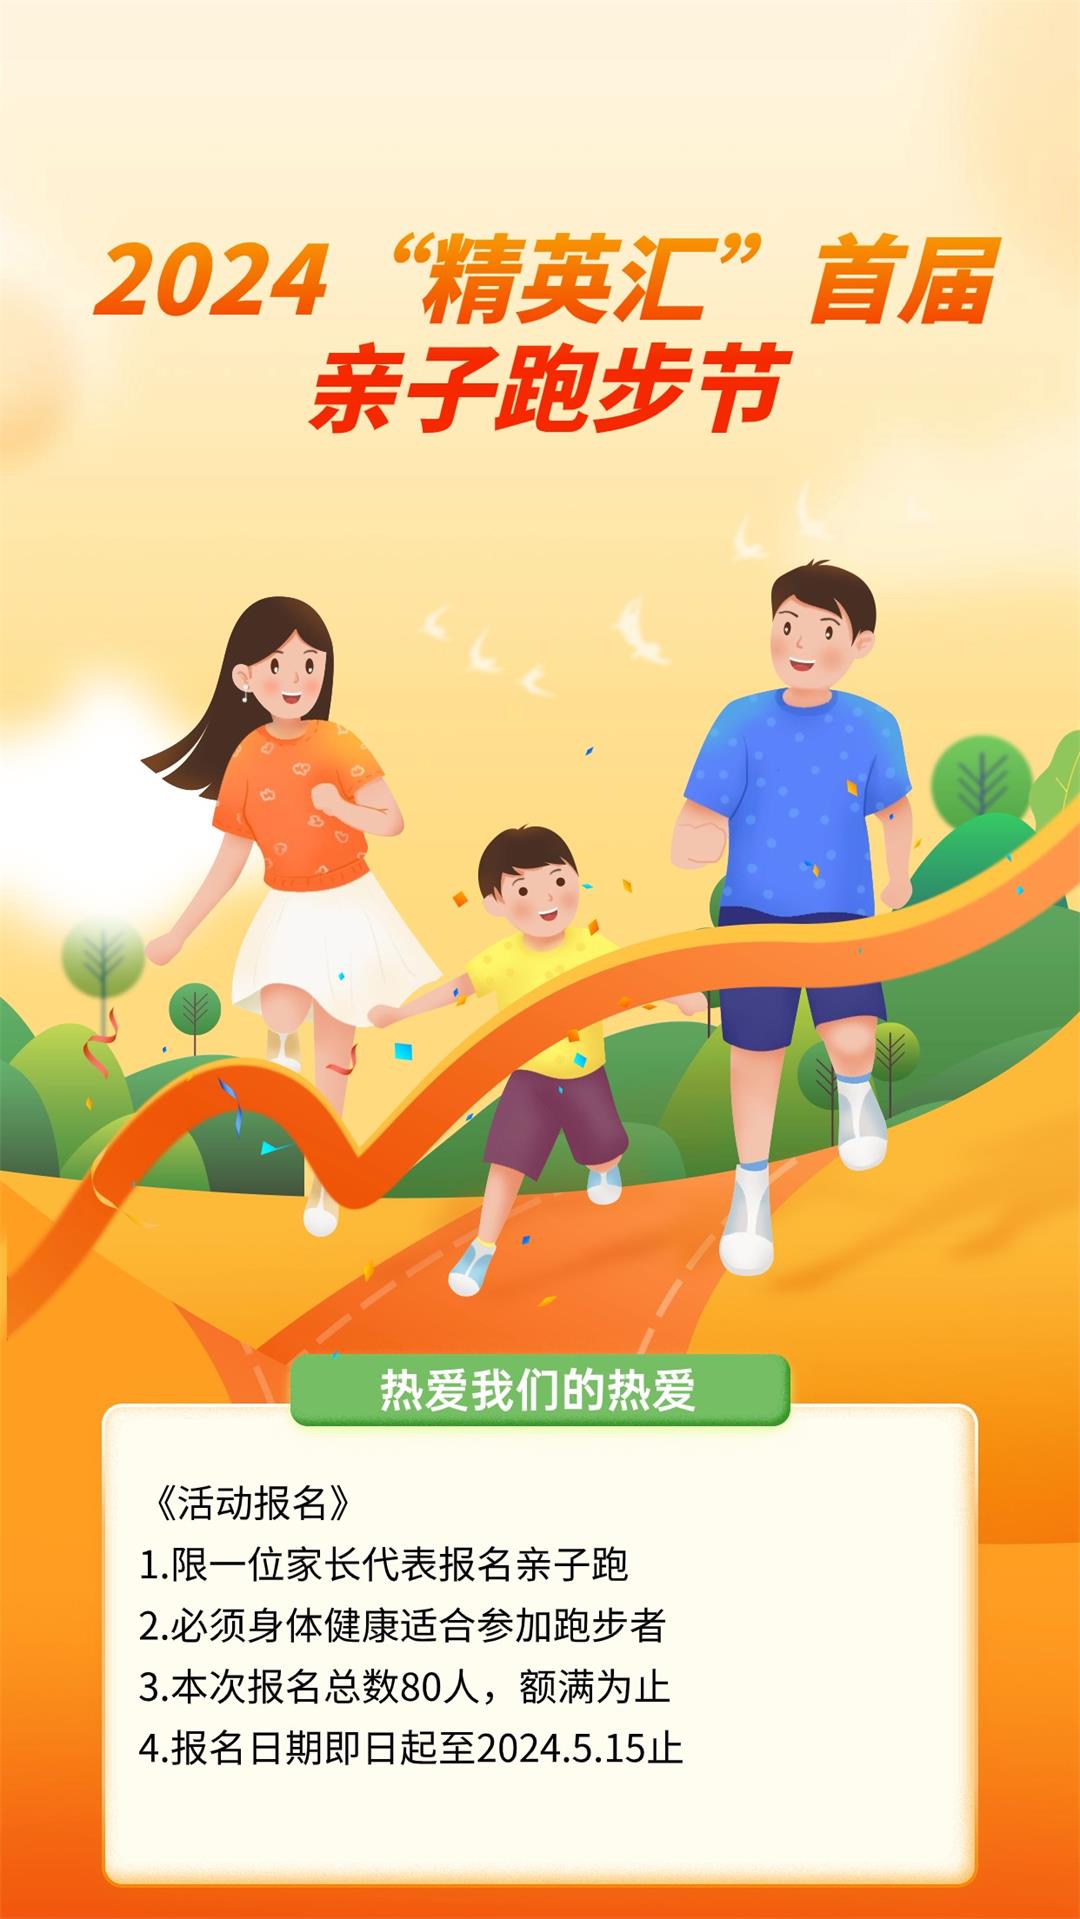 全民健身亲子家庭教育机构手机海报 (1).jpg